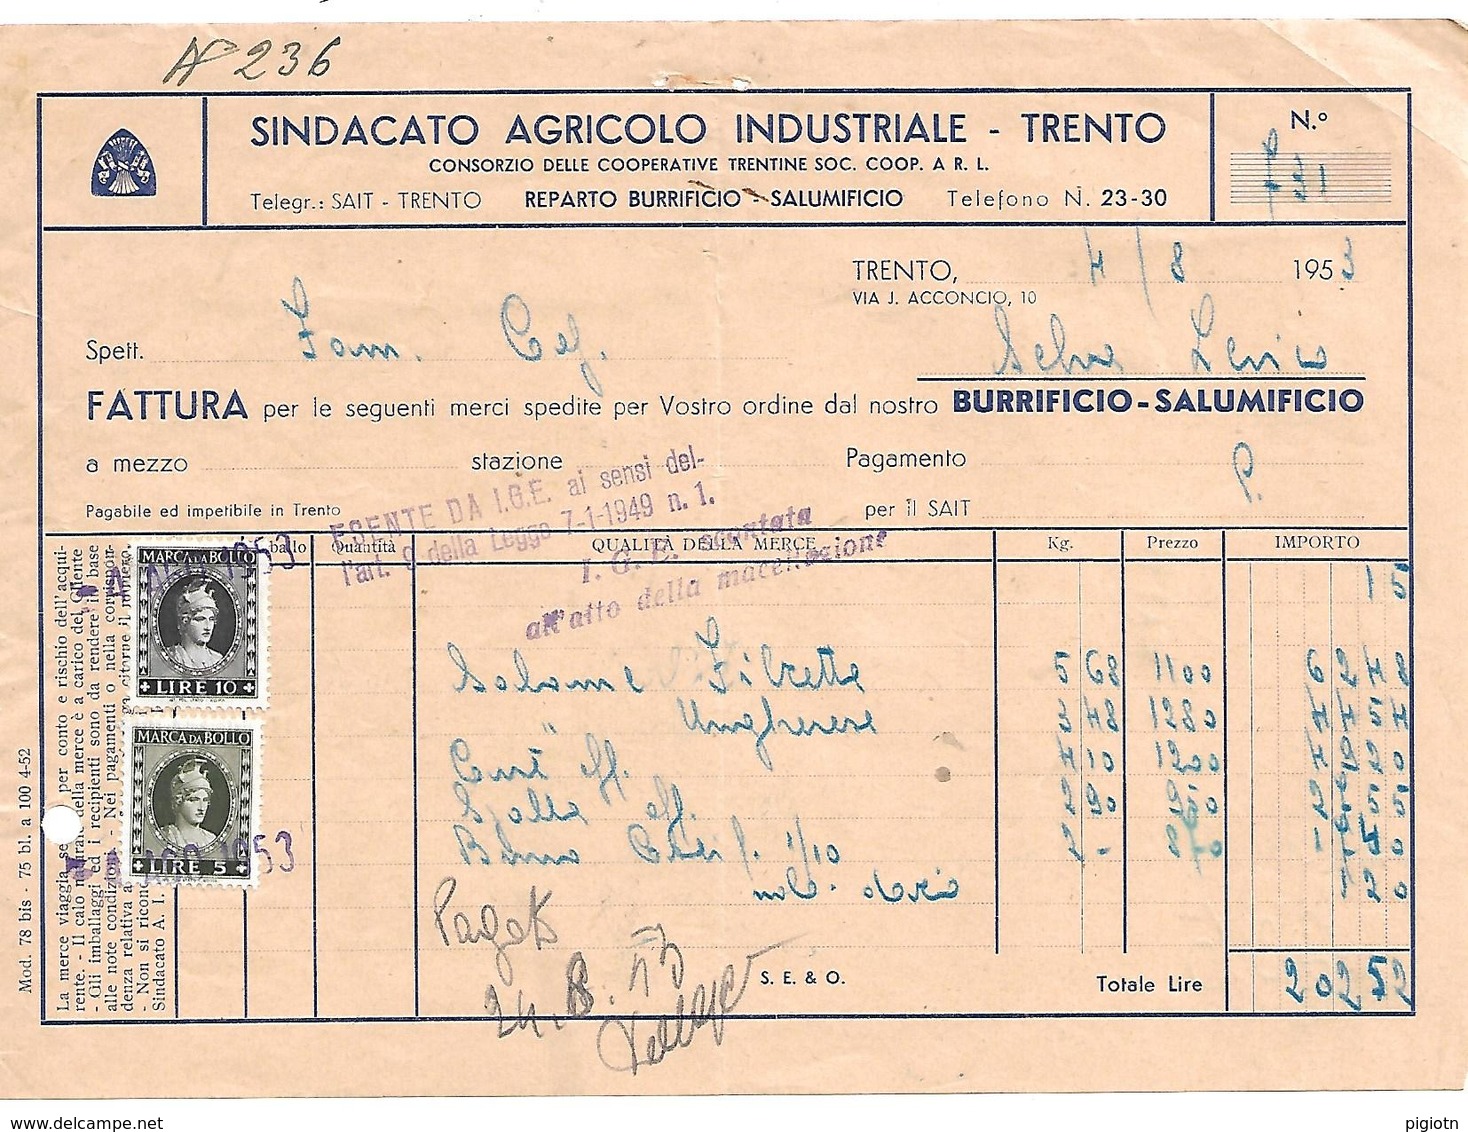 FAT110 - FATTURA 1953 - SINDACATO AGRICOLO INDUSTRIALE TRENTO - MARCHE DA BOLLO - Italia